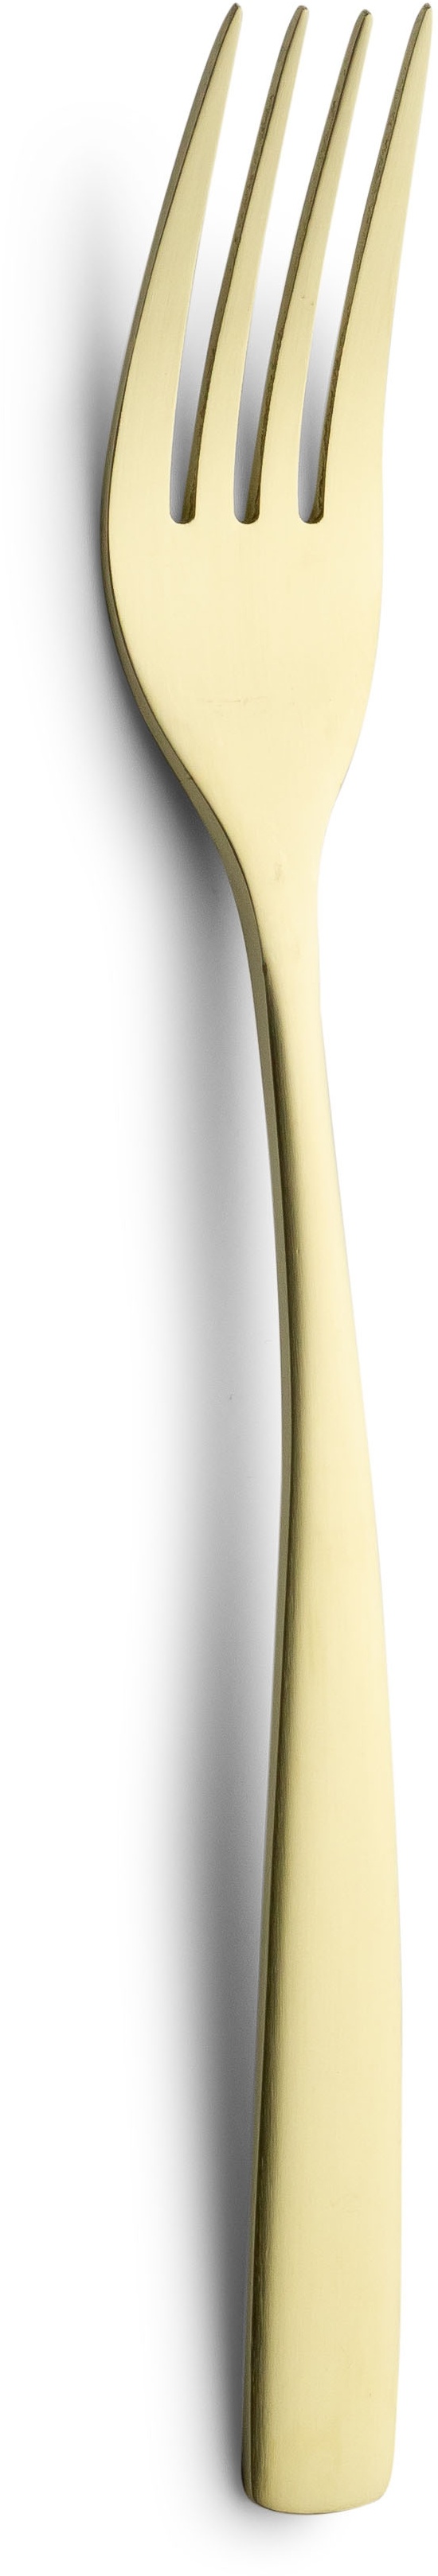 Série Comas BCN Colors Champagne 18/10 Fourchette Champagne | Mindestbestellmenge 12 Stück